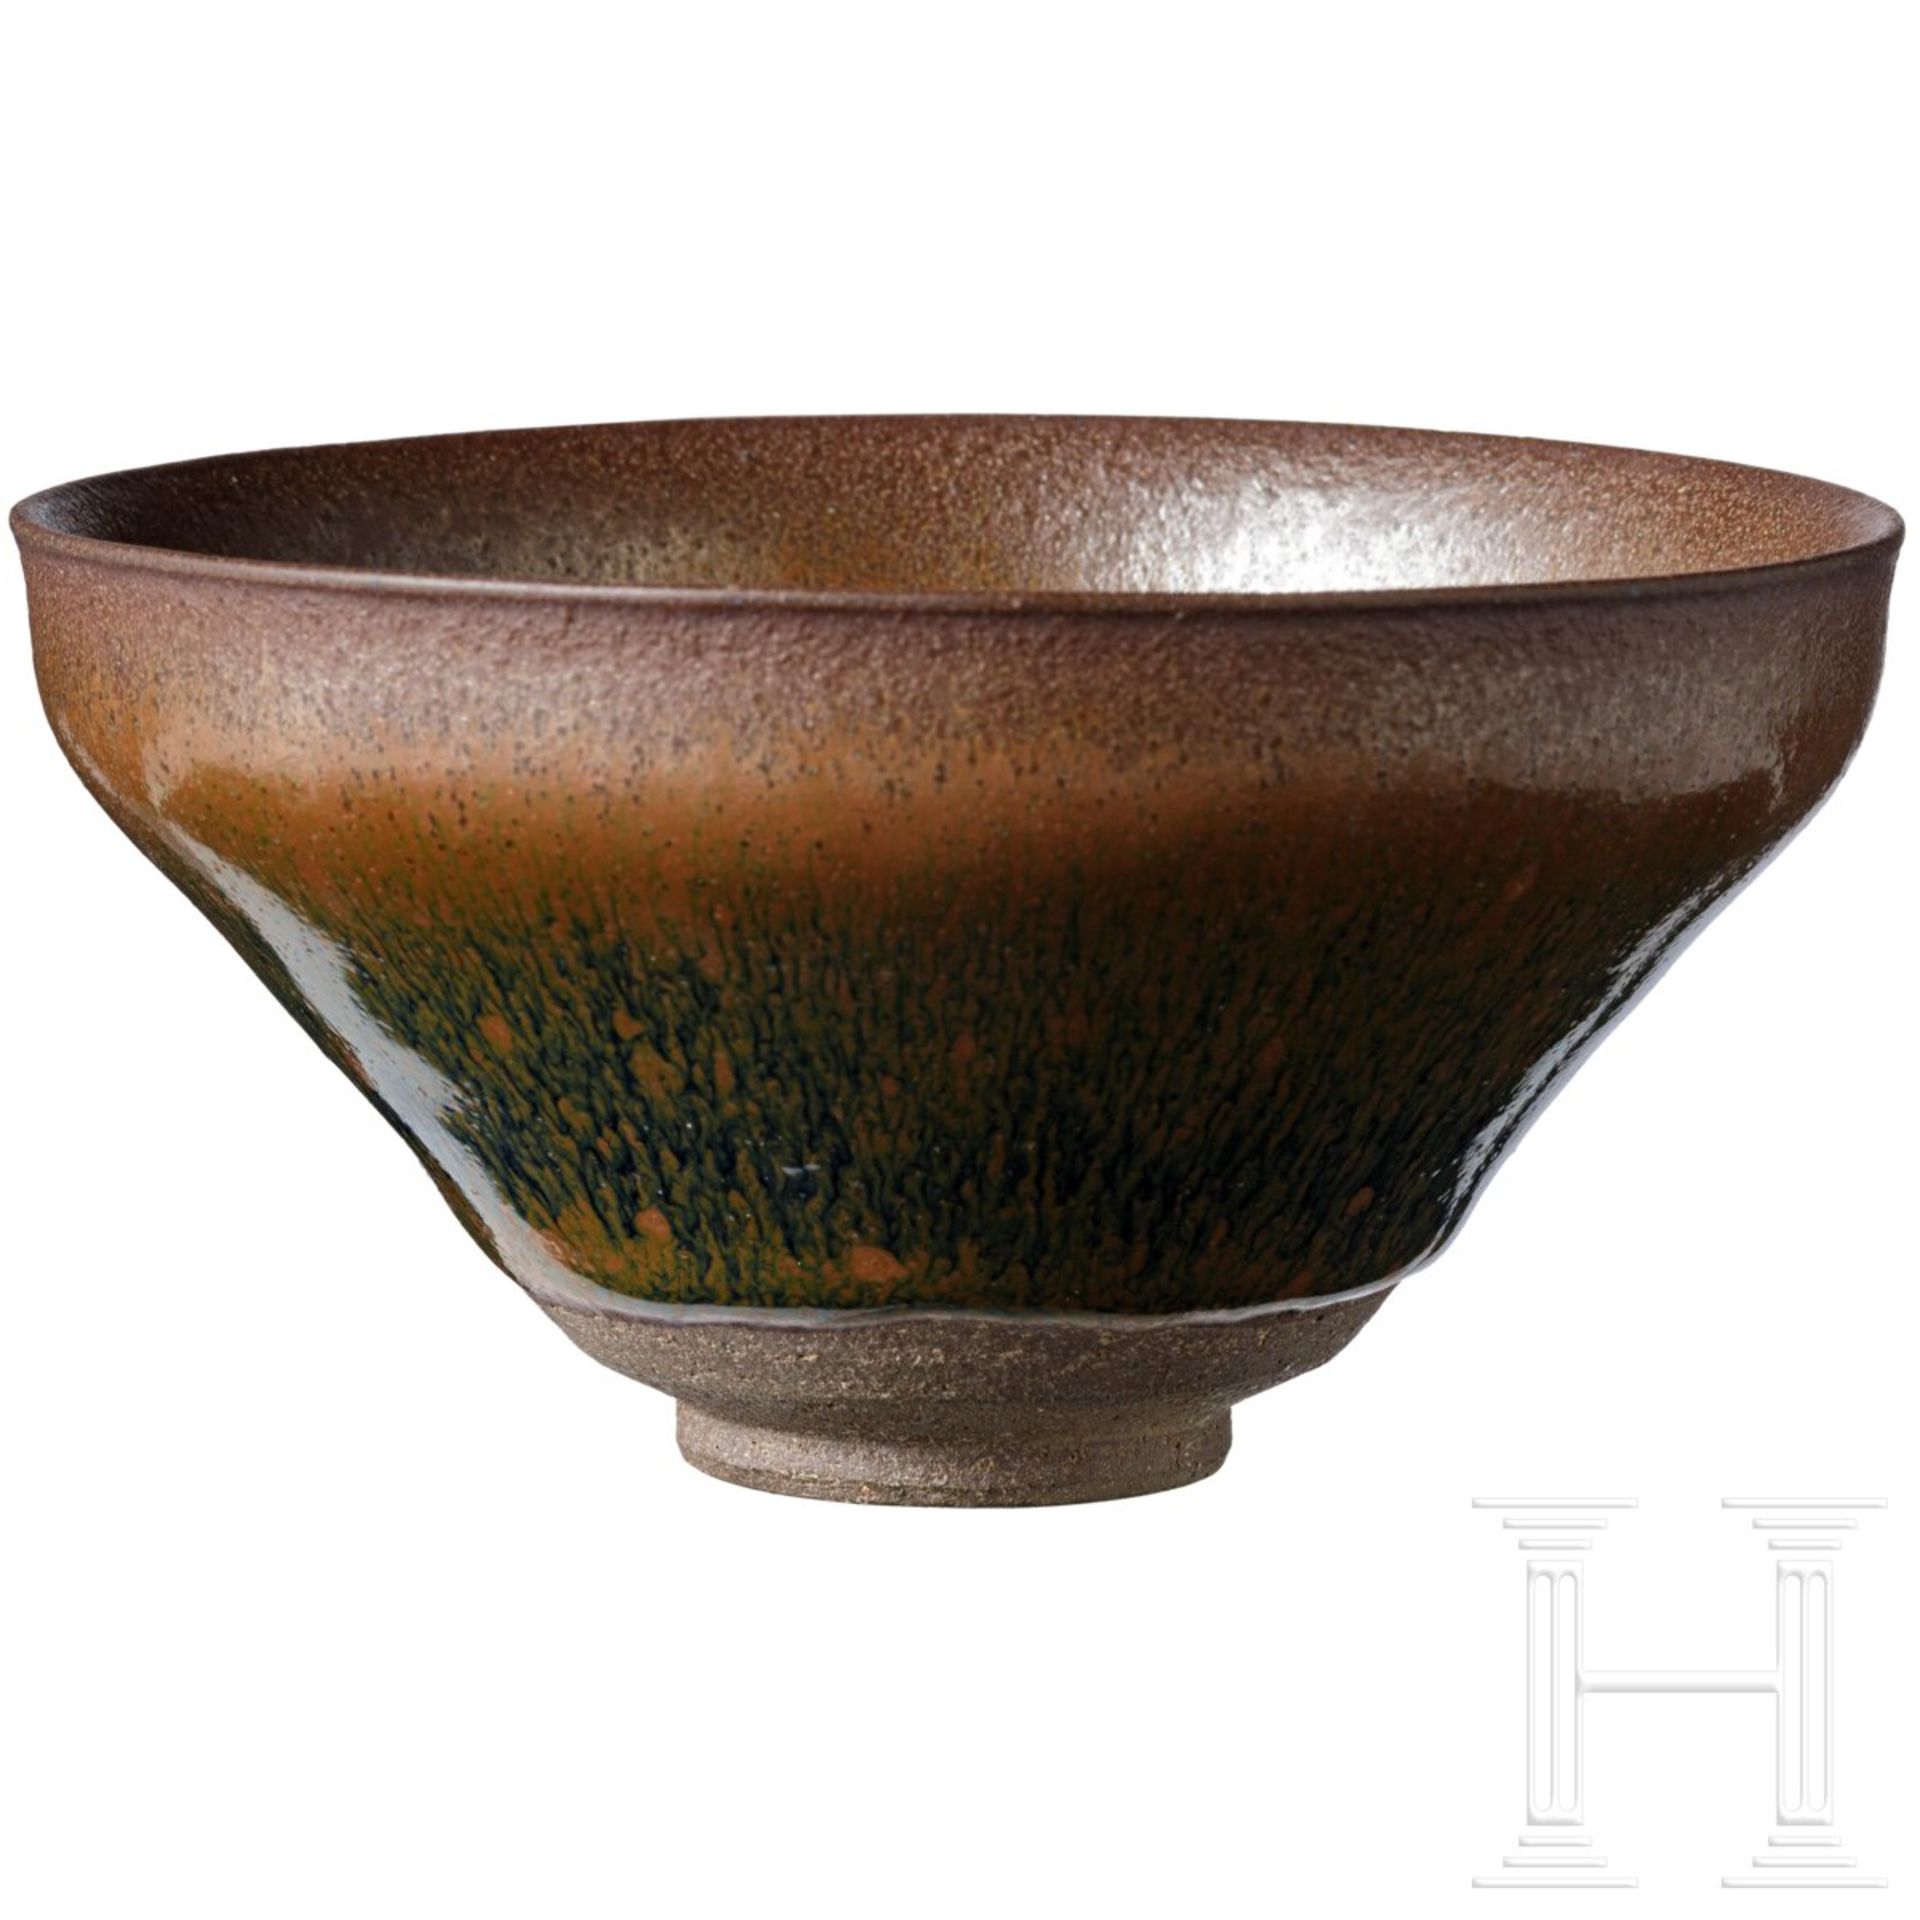 Jianyao-Teeschale mit schwarz-brauner Hasenfell-Glasur, Song-Dynastie (12. - 13. Jhdt.) - Bild 4 aus 19